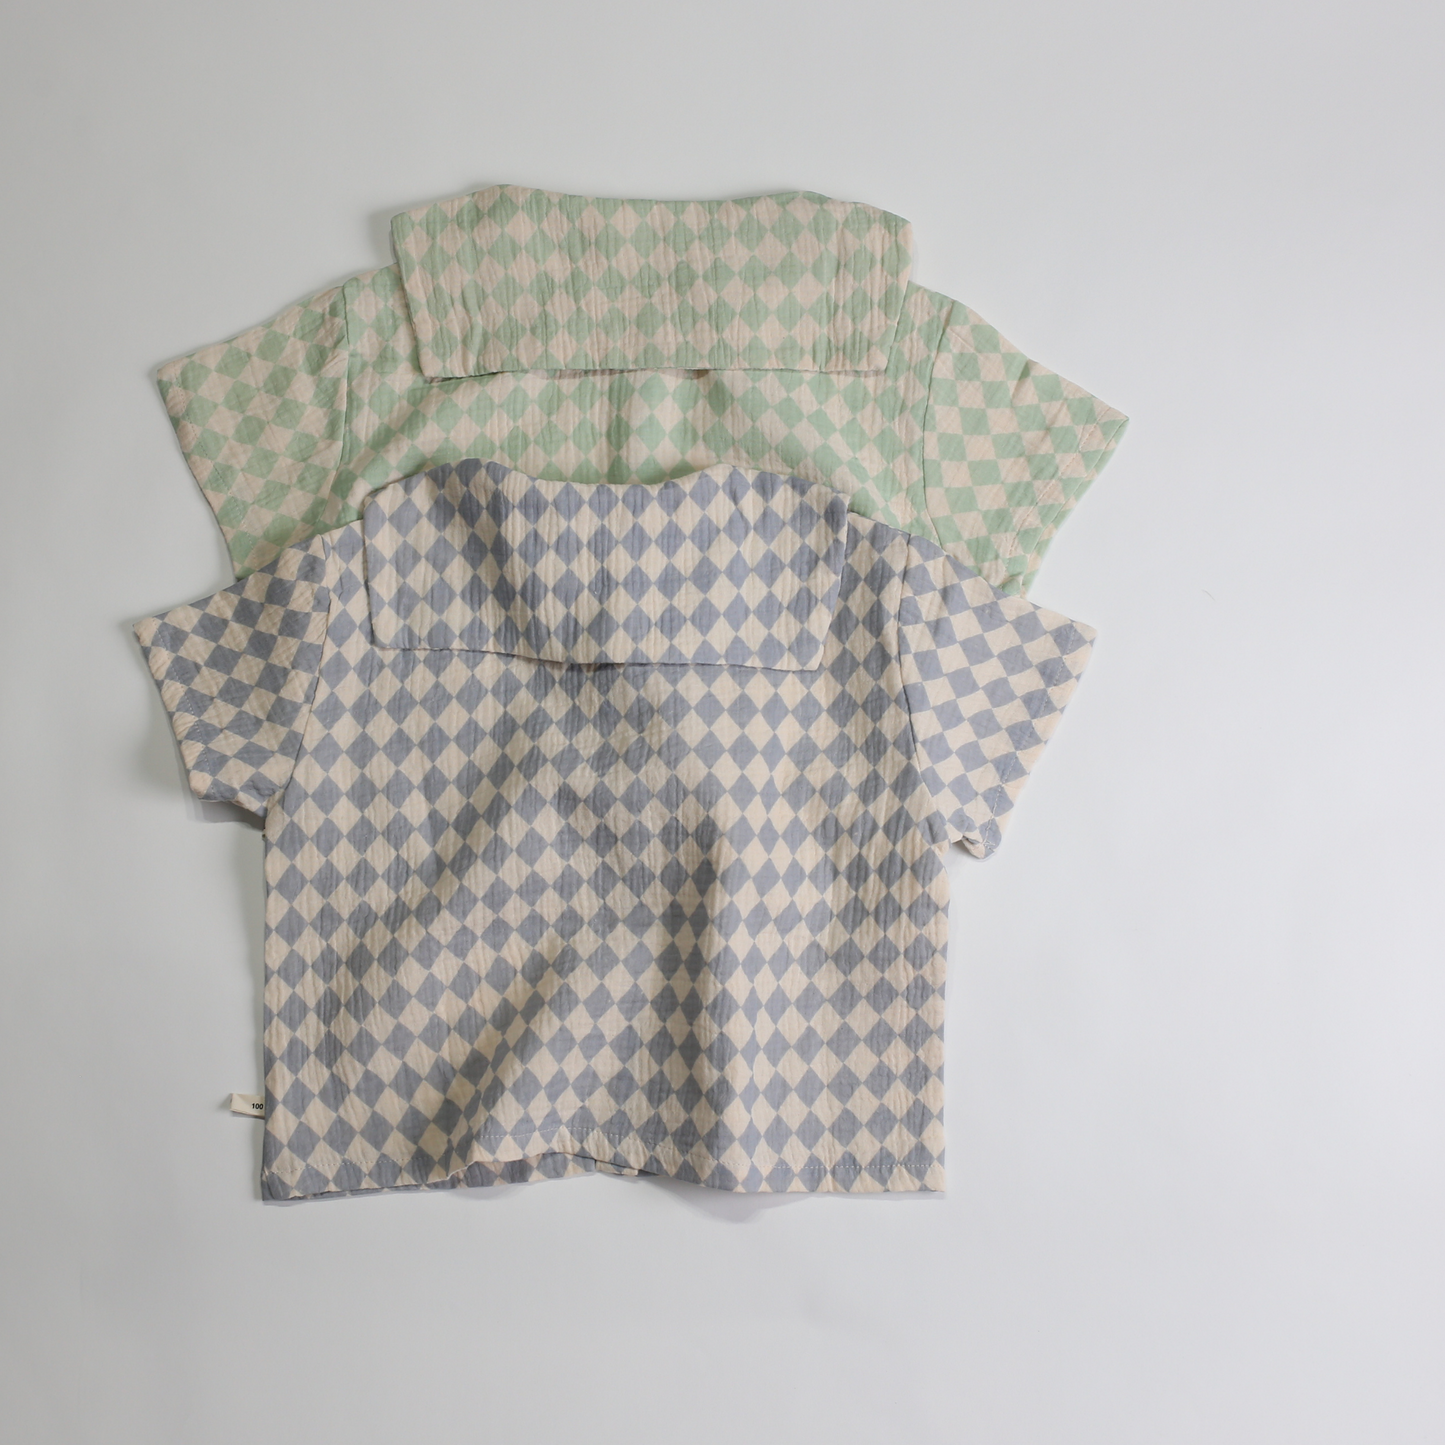 セーラーカラー シャツ / sailor collar shirt (こども服) - kids clothes shop GUZUGUZU